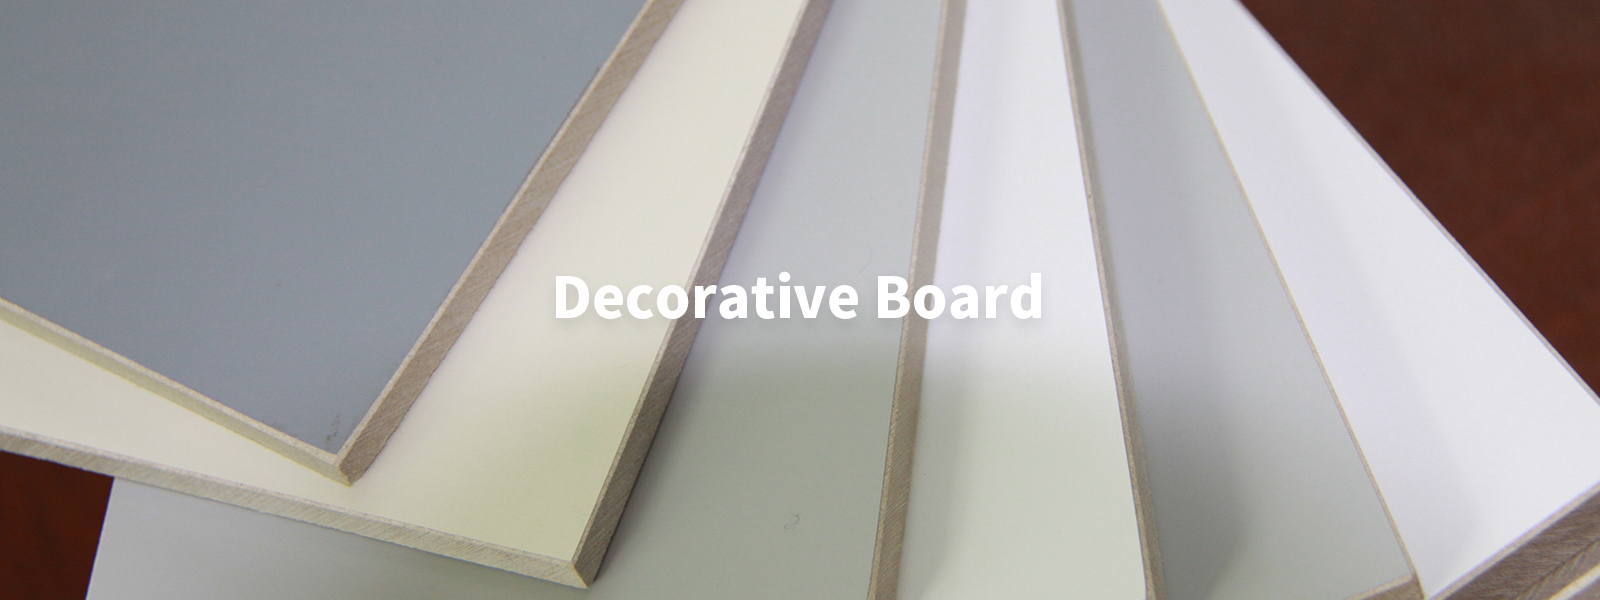 Decorative Board